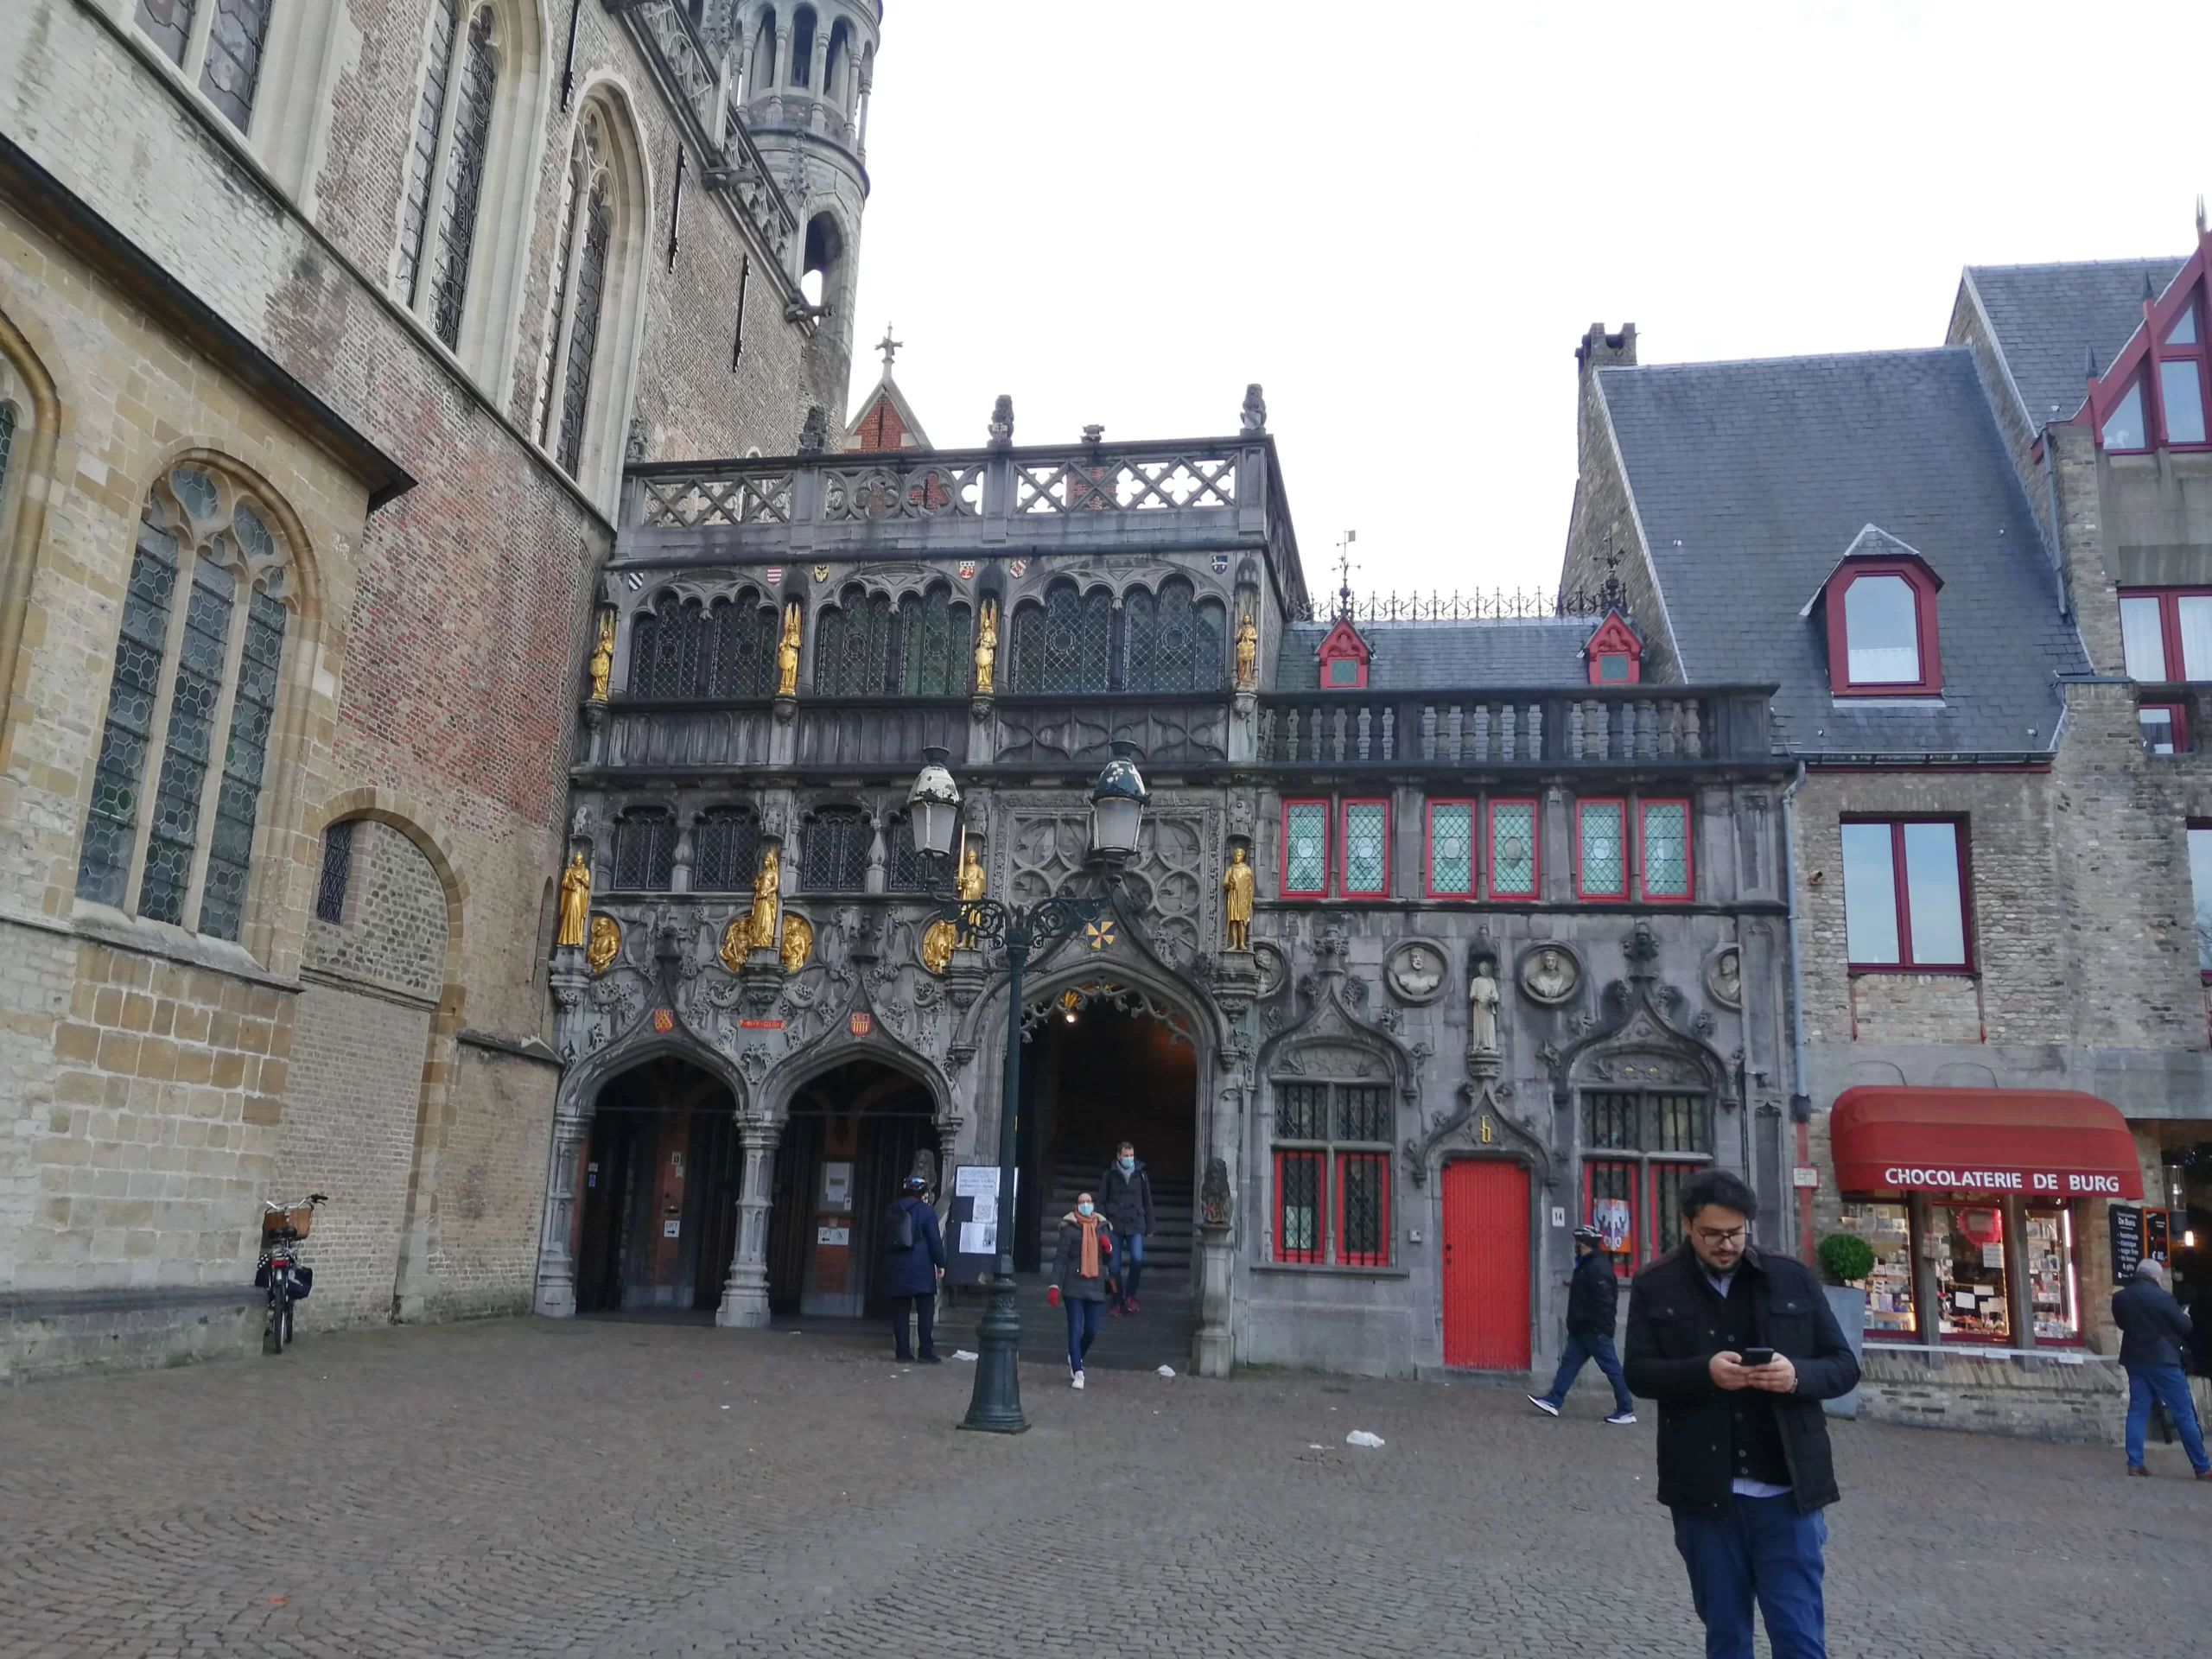 Ανακαλύπτοντας την πόλη της Μπριζ (Brugge) στο Βέλγιο (Φλάνδρα) και τα αξιοθέατά της